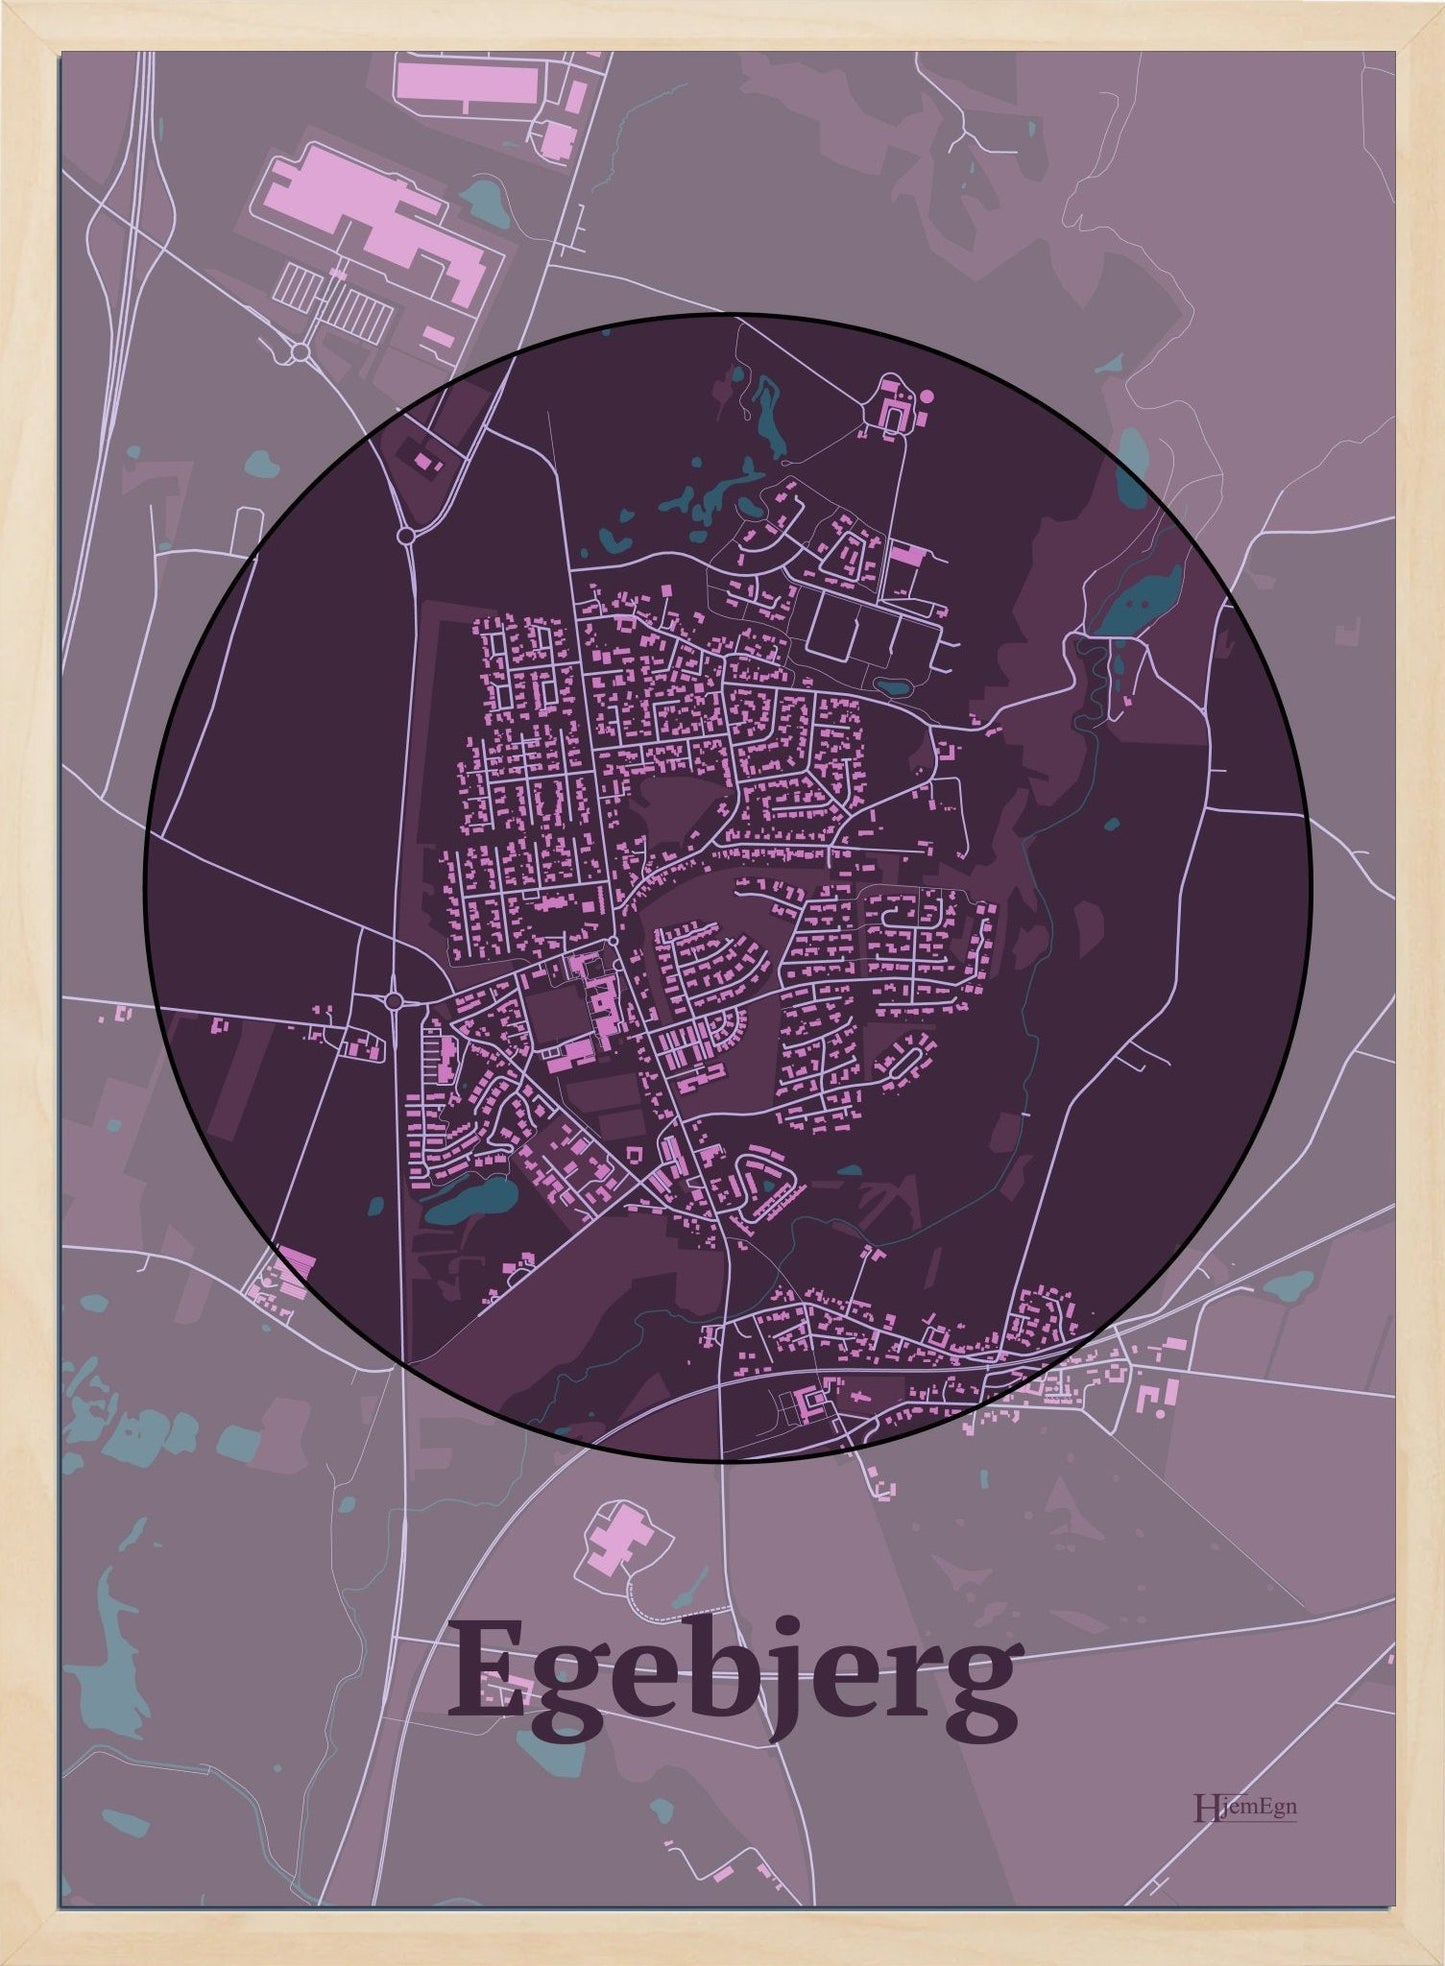 Egebjerg plakat i farve mørk rød og HjemEgn.dk design centrum. Design bykort for Egebjerg